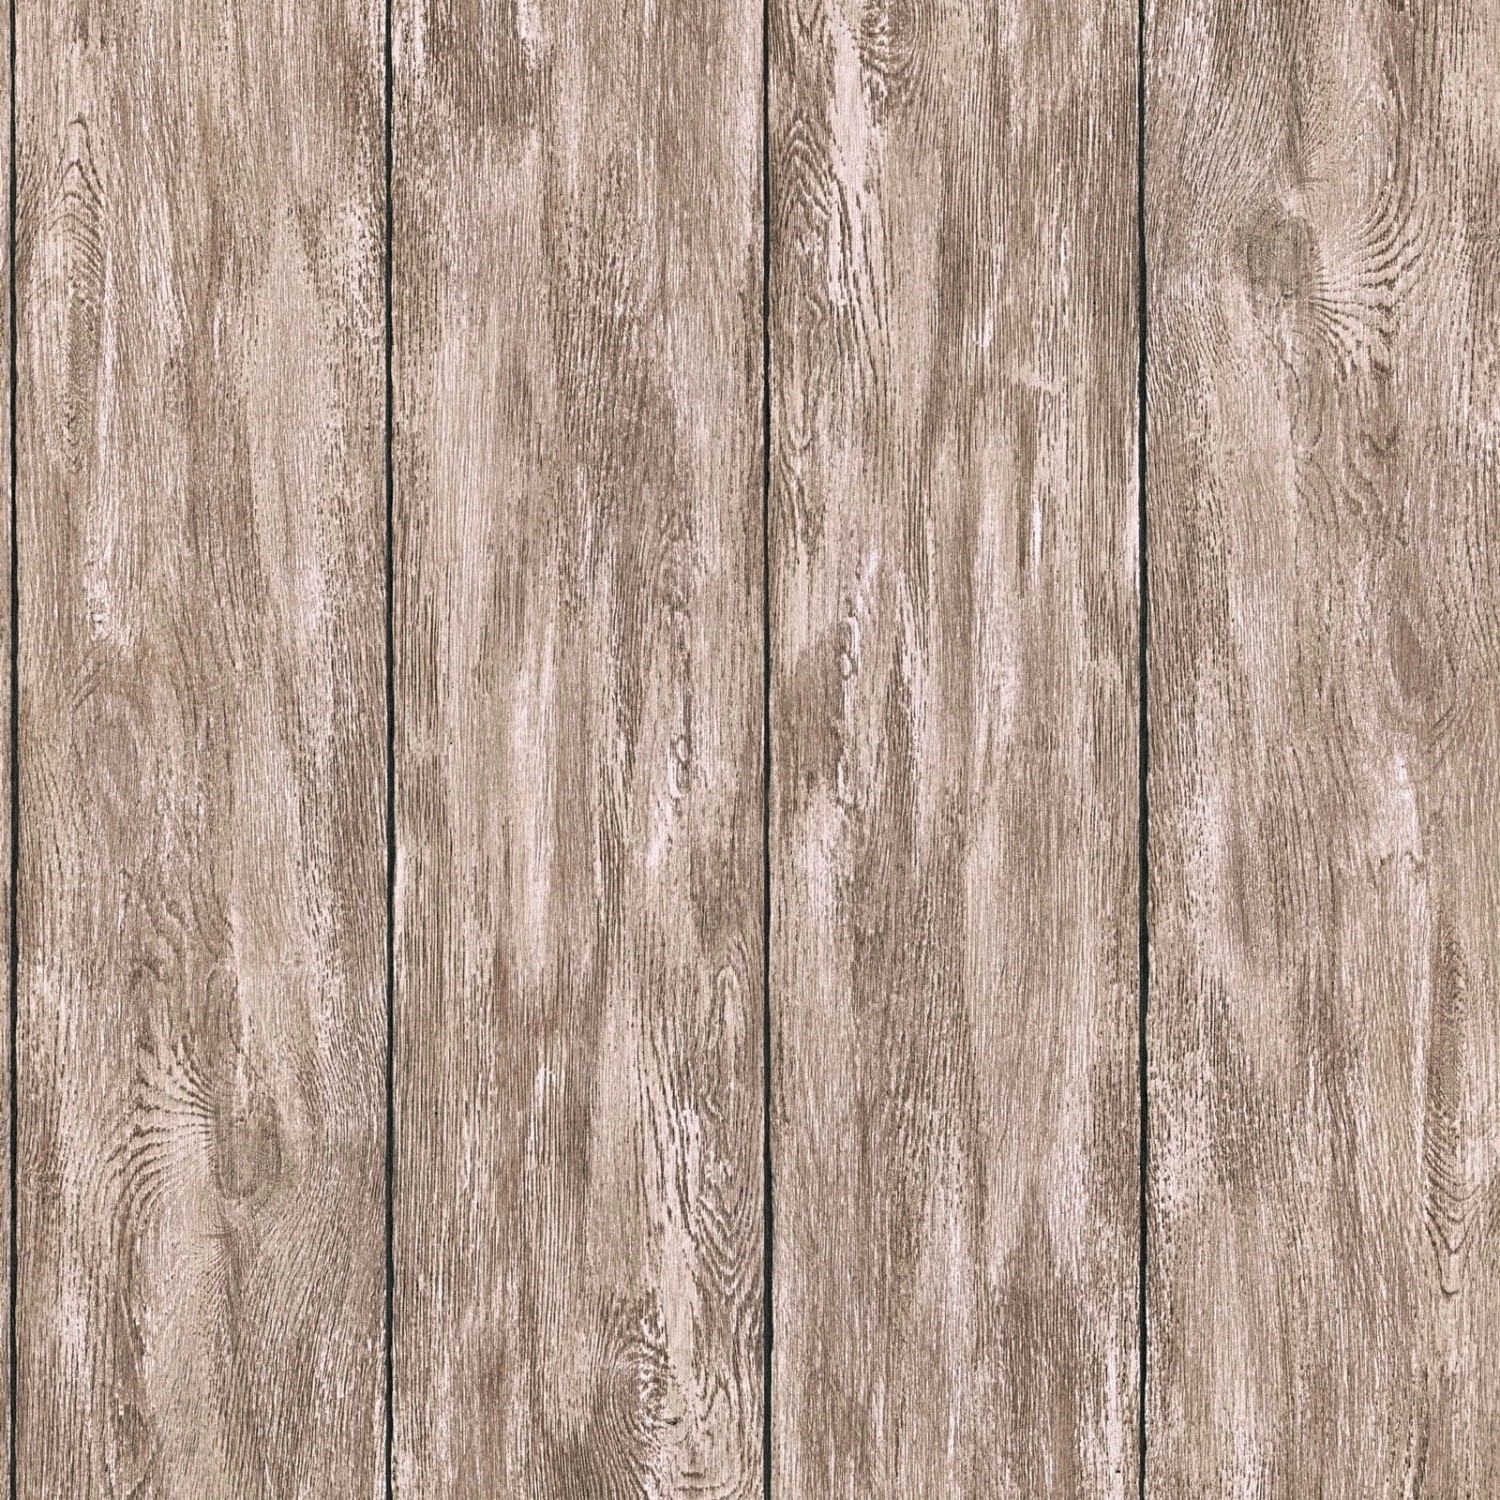 Bricoflor Vlies Holztapete Beige Braun Holzpaneele Tapete Rustikal Ideal für Küche und Wohnzimmer Vliestapete in Holzopt